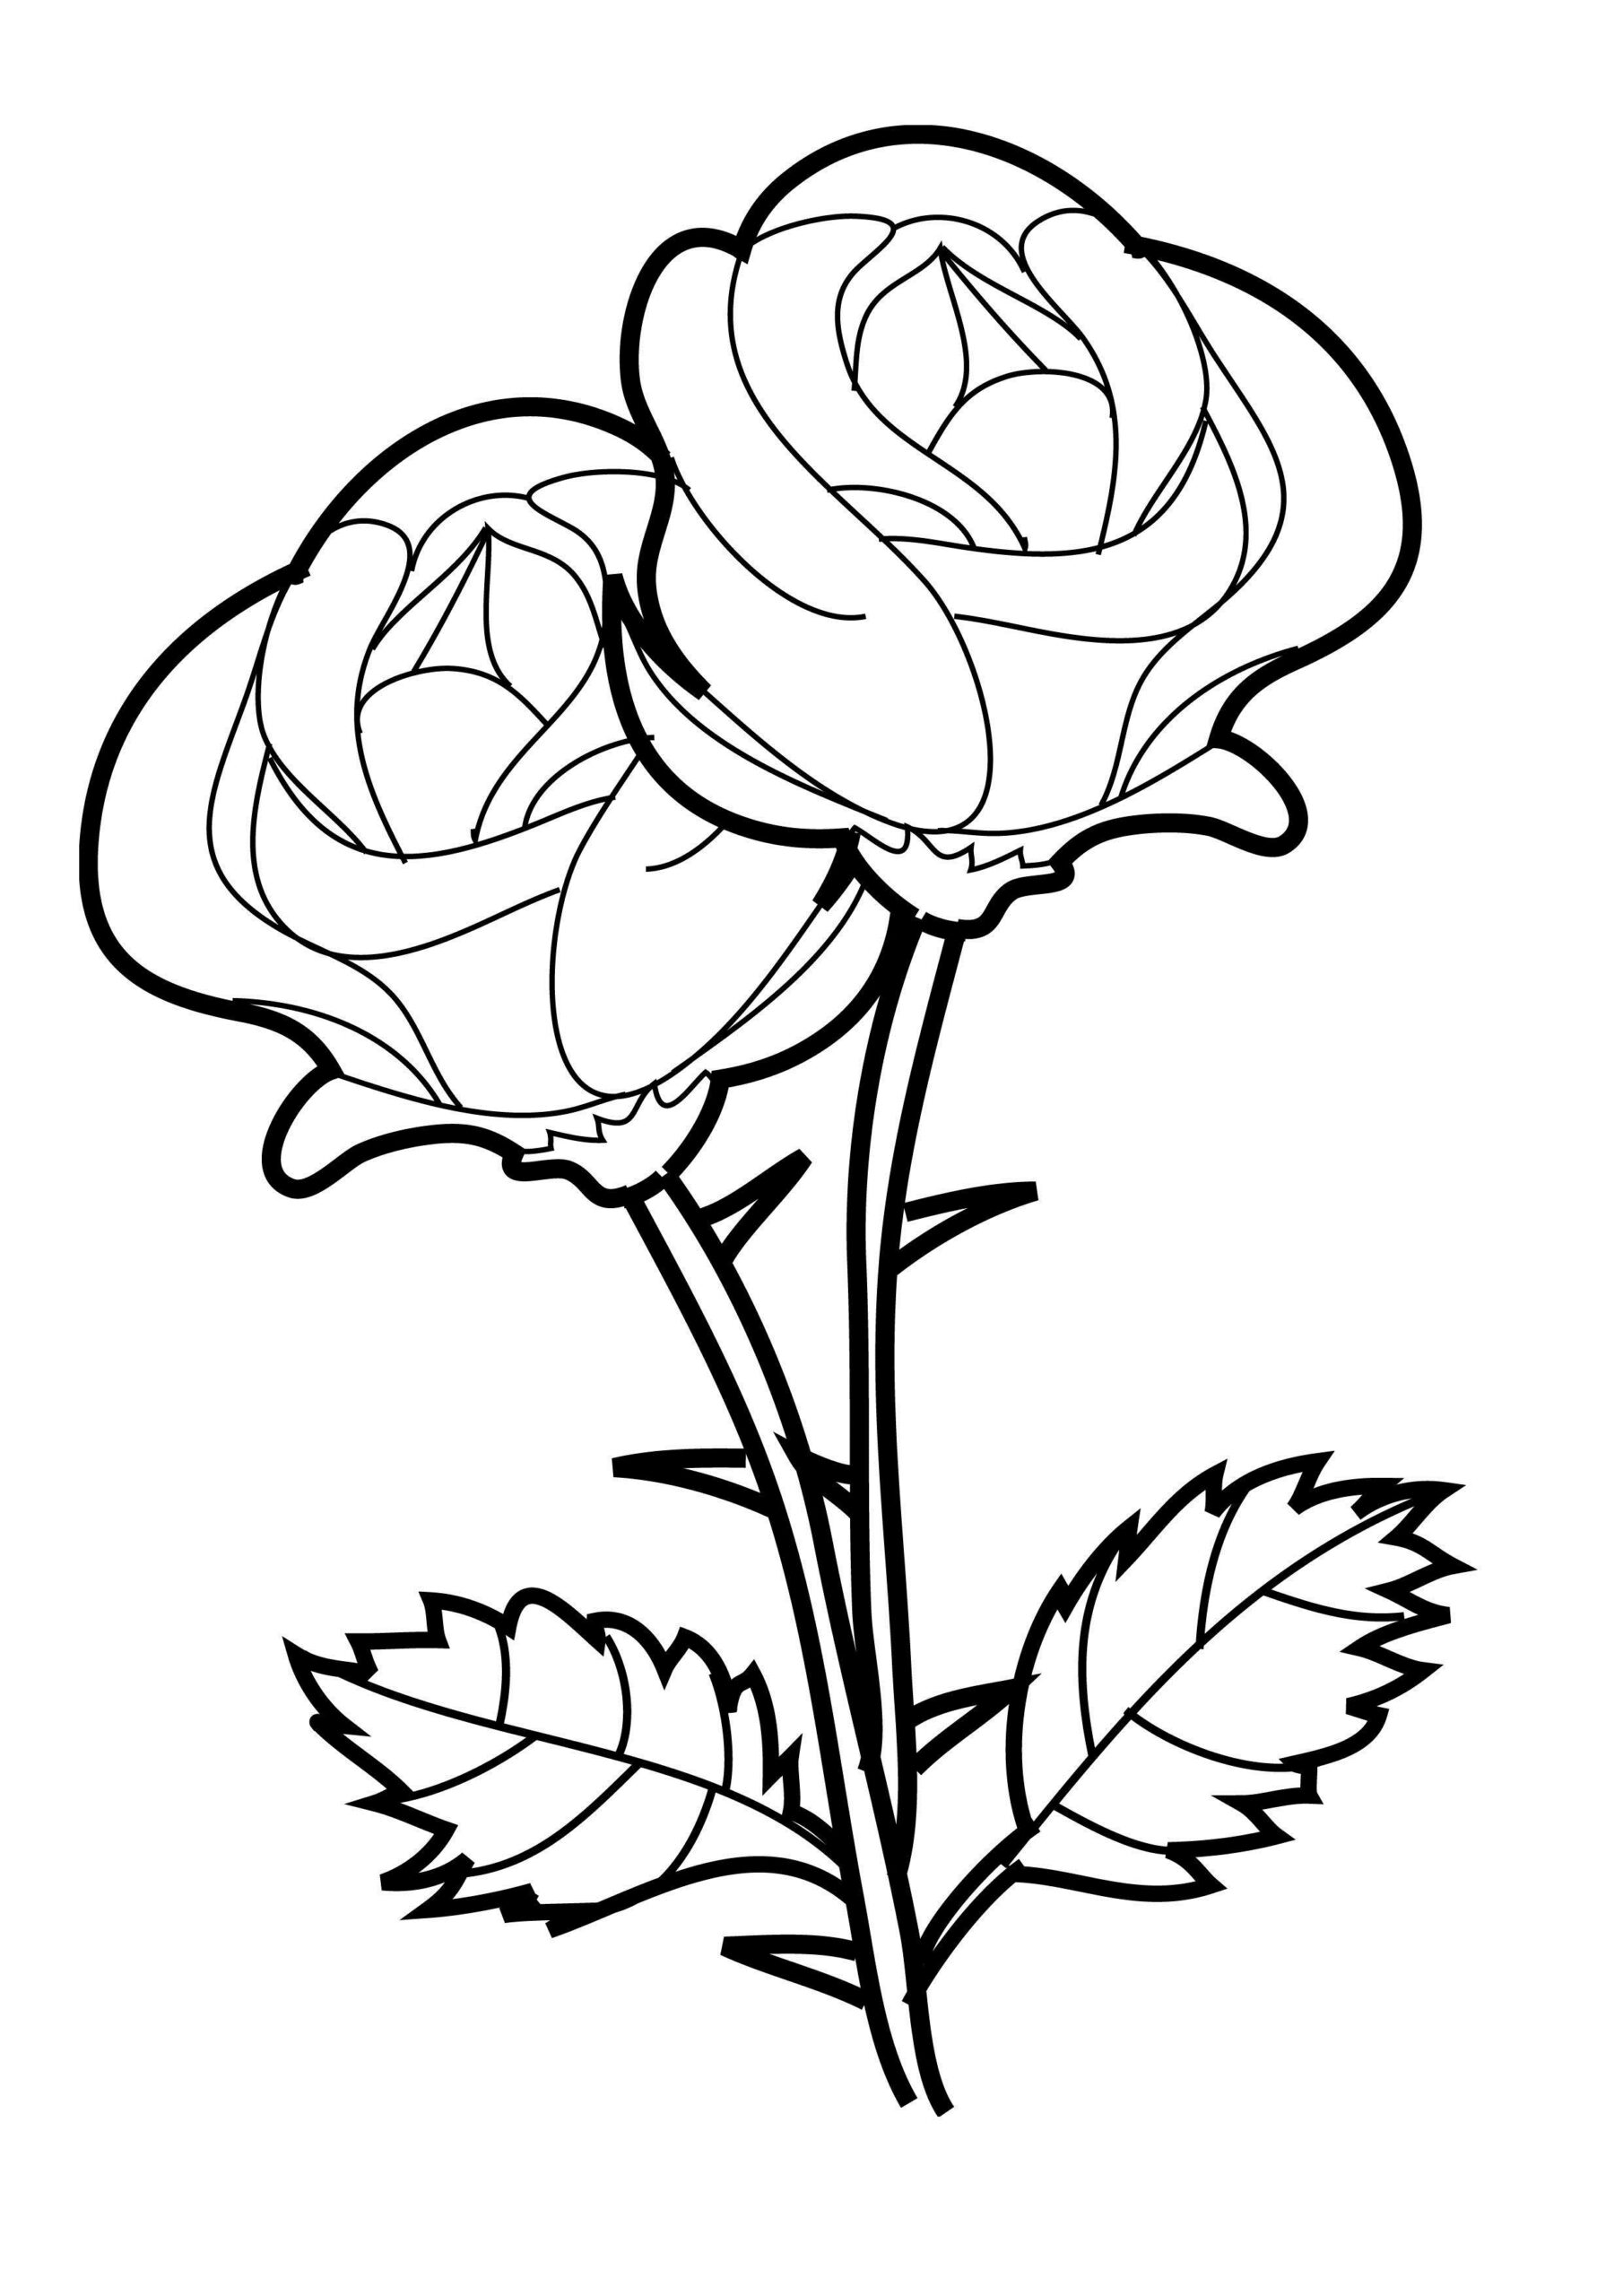 Coloriage Roses #161890 (Nature) - Dessin À Colorier - Coloriages À concernant Rose A Colorier